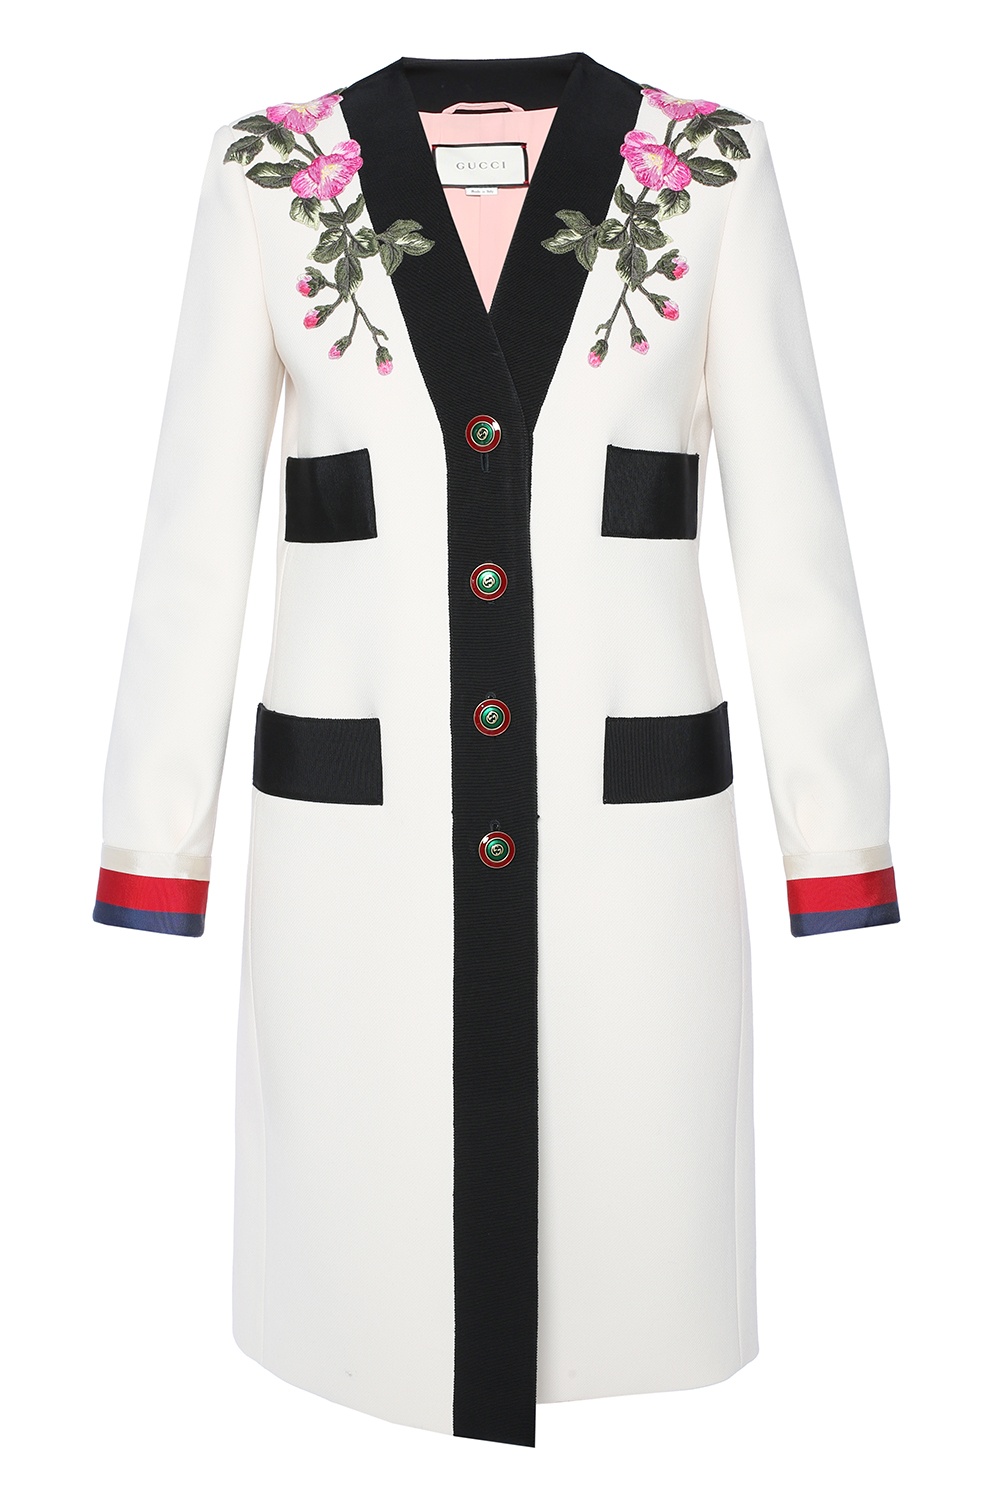 gucci floral coat